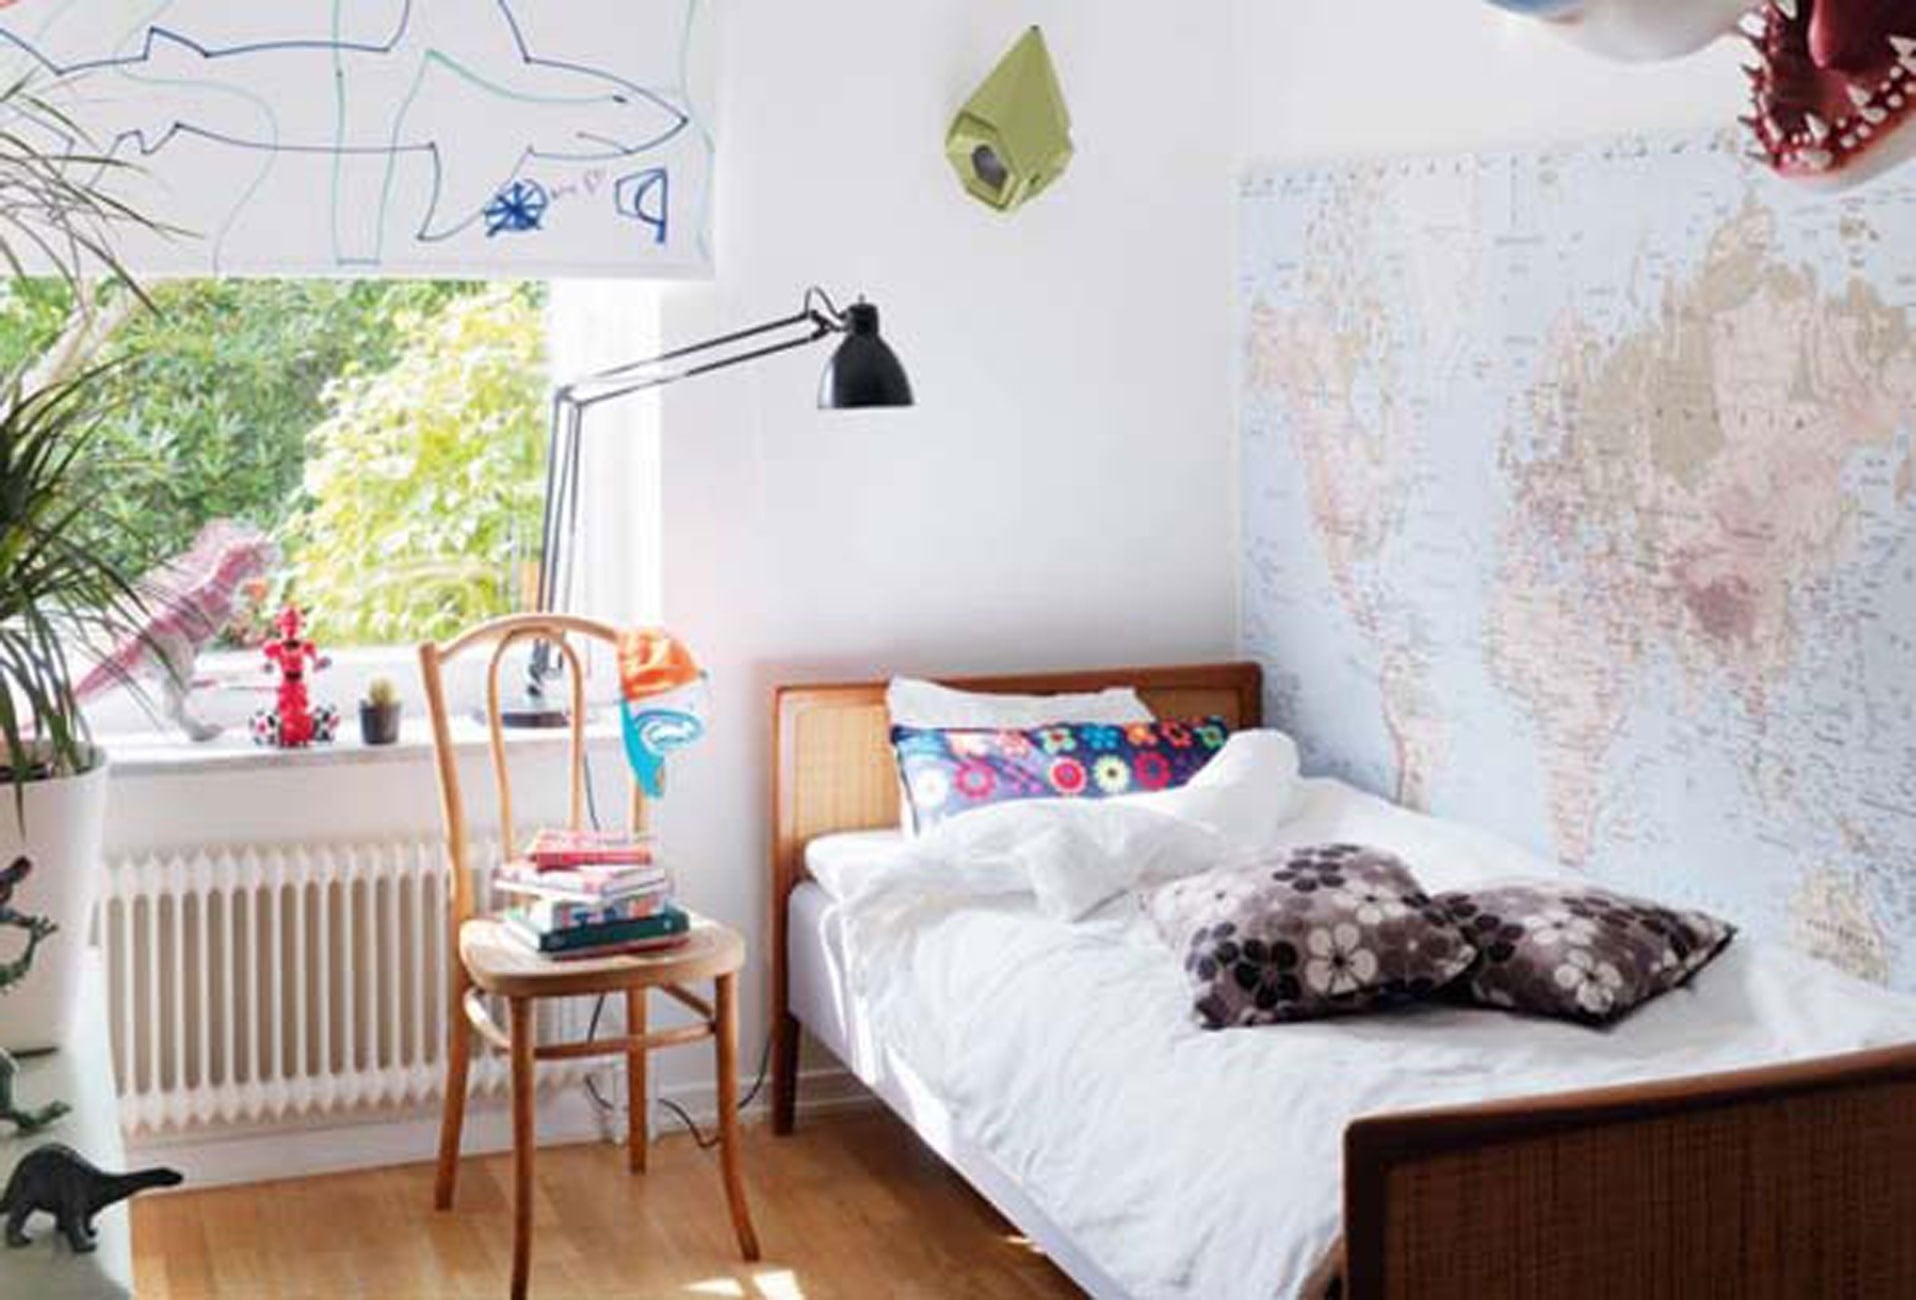 48 Ide Cantik Desain Tembok Kamar Tidur Sederhana Yang Belum Banyak Diketahui